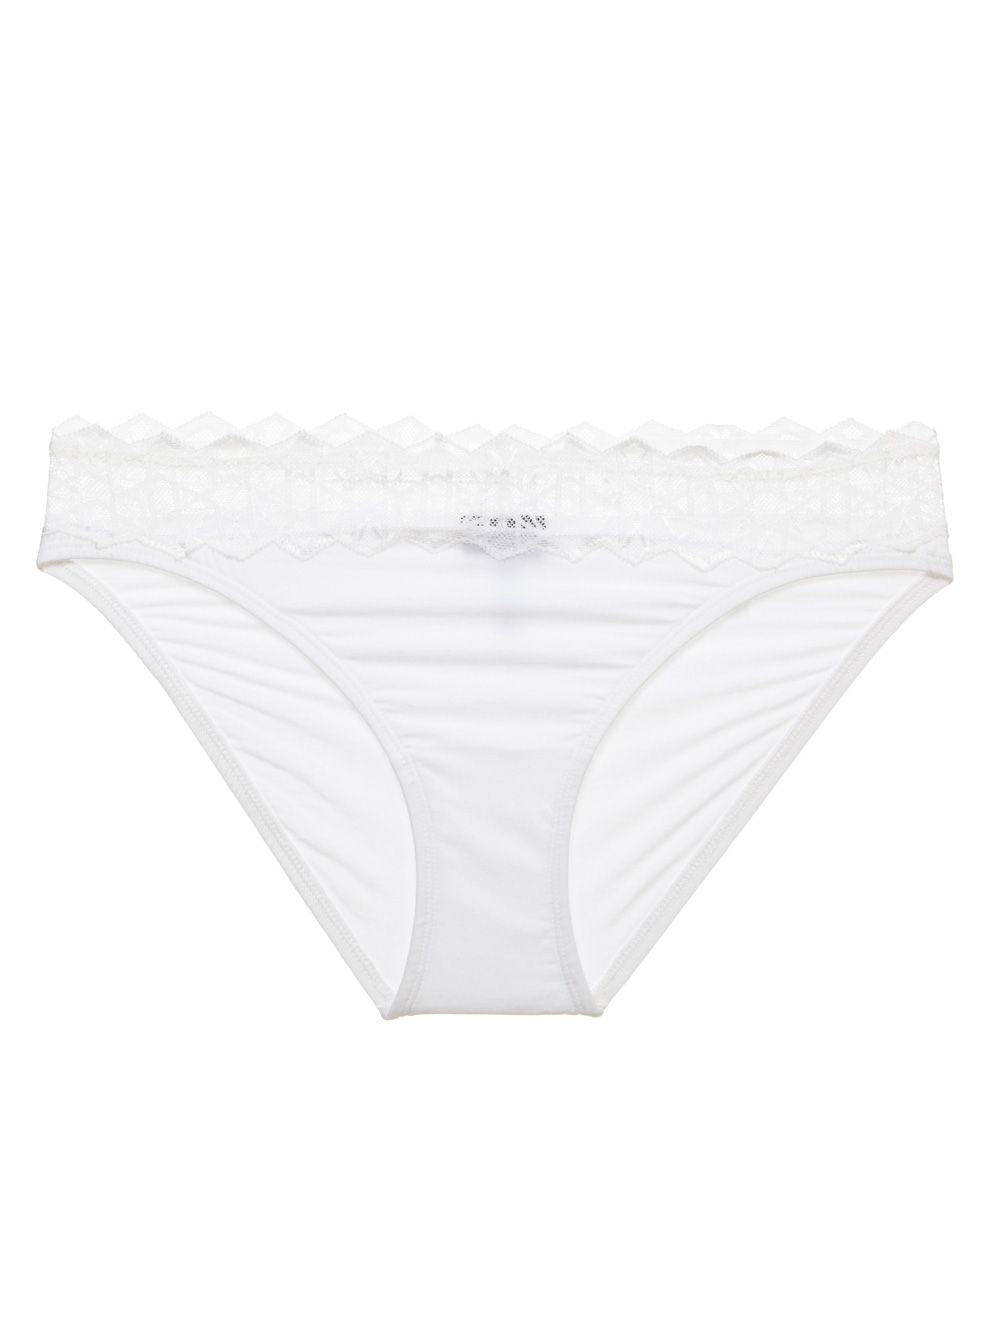 Lace trim waistband cotton bikini panty